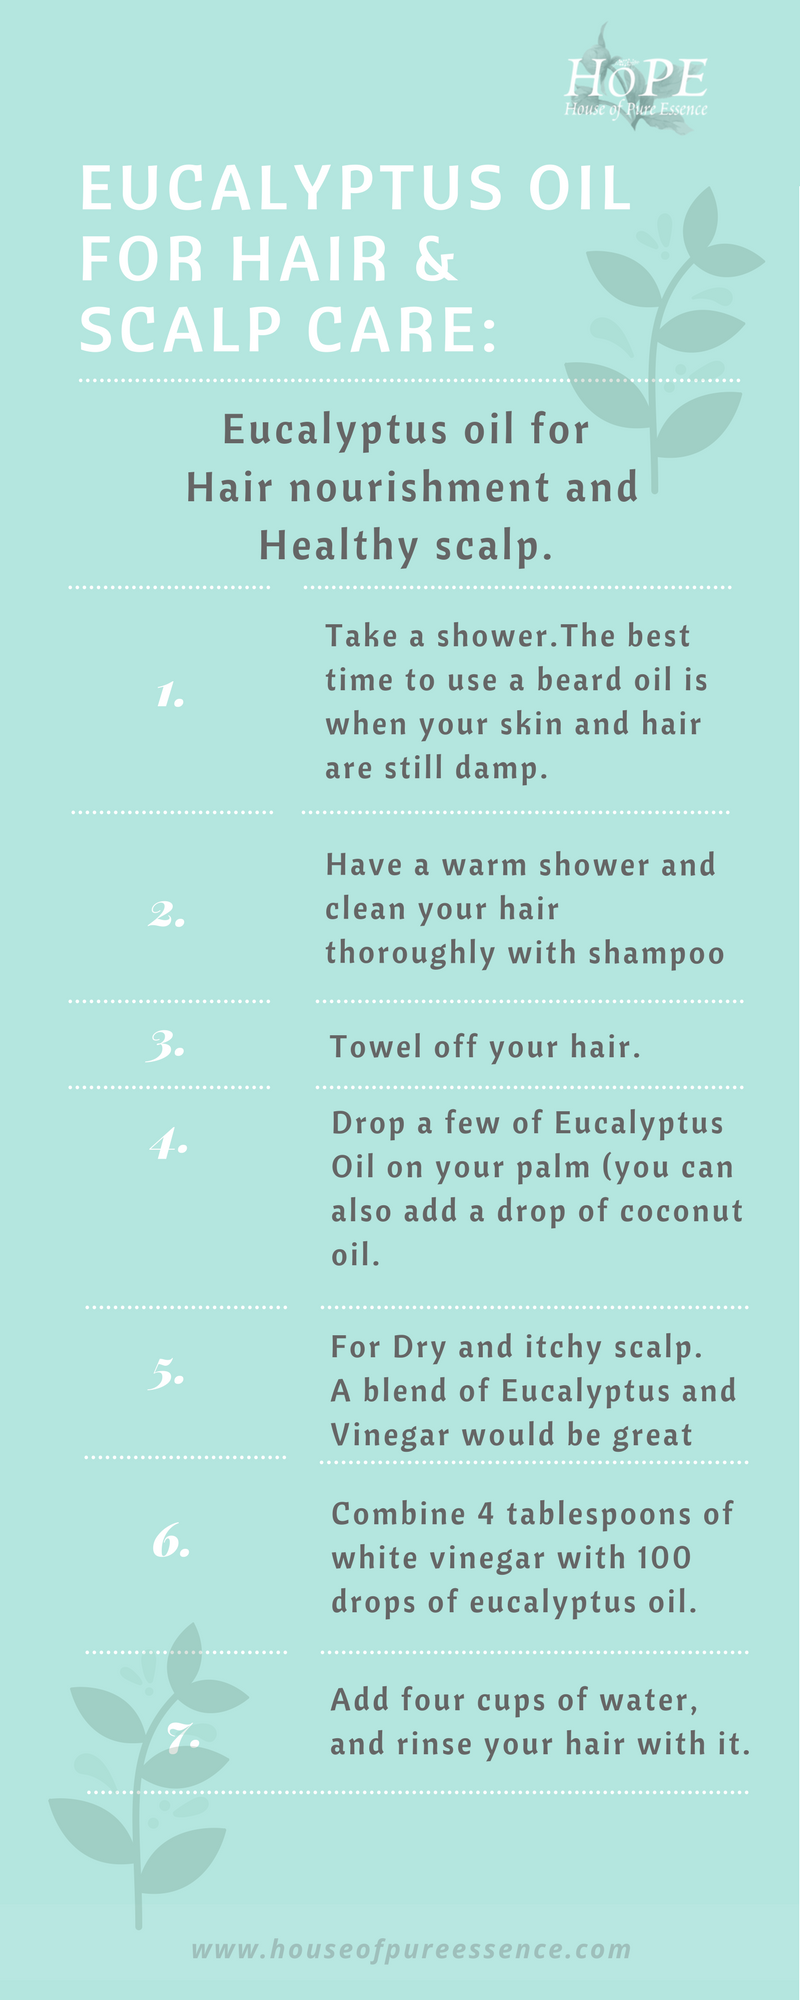 Hope Eucalyptus Oil for Hair and Scalp Care